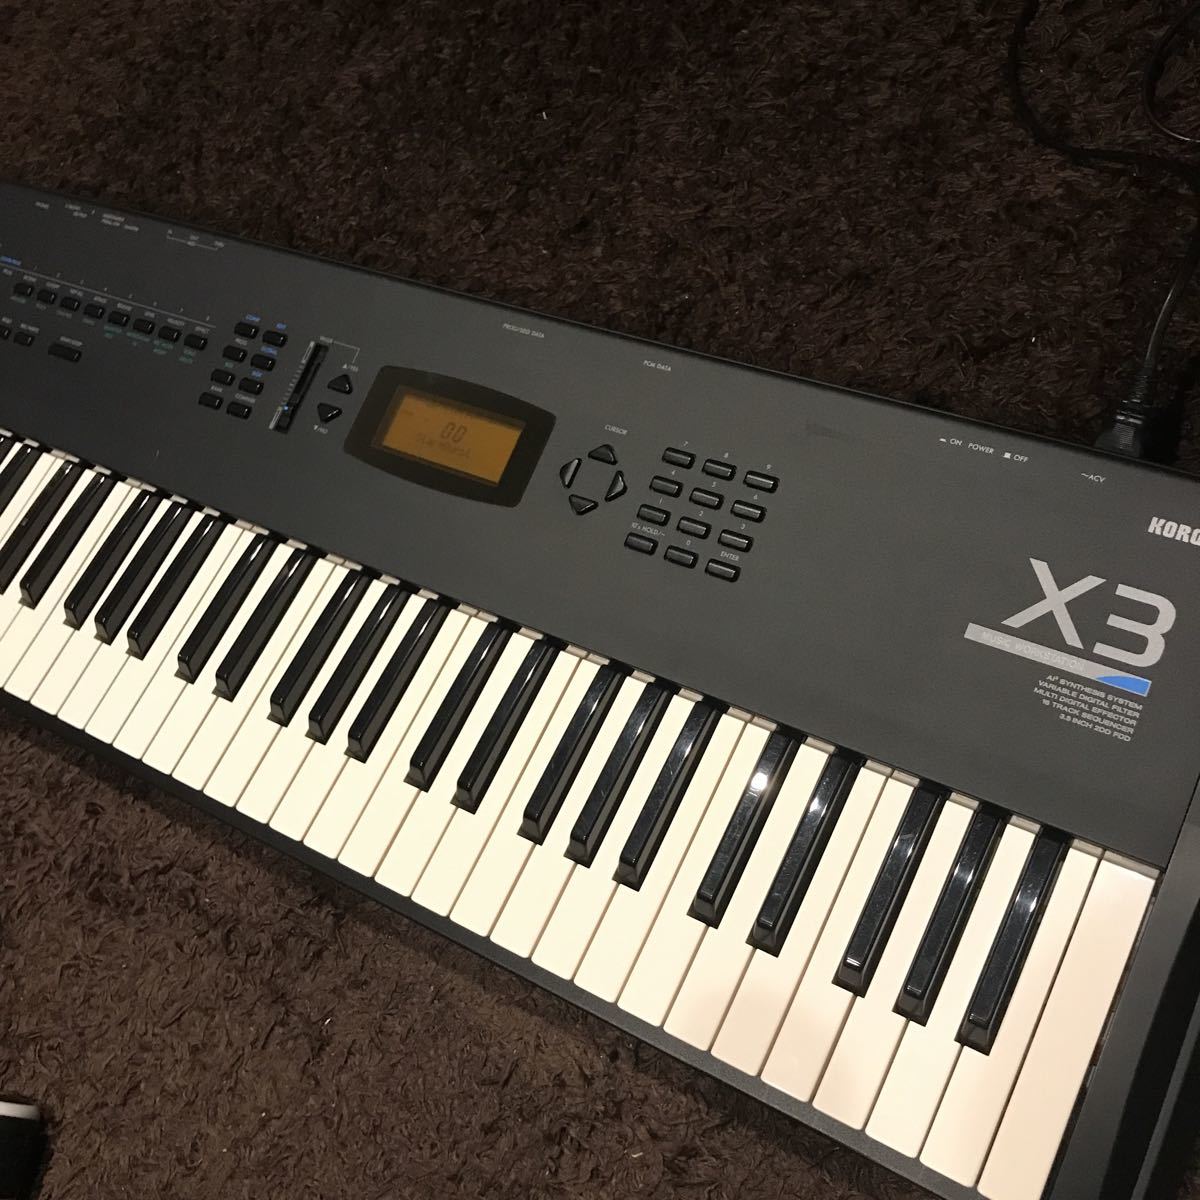 正規取扱店販売品 コルグ KORG シンセサイザー X3 鍵盤楽器